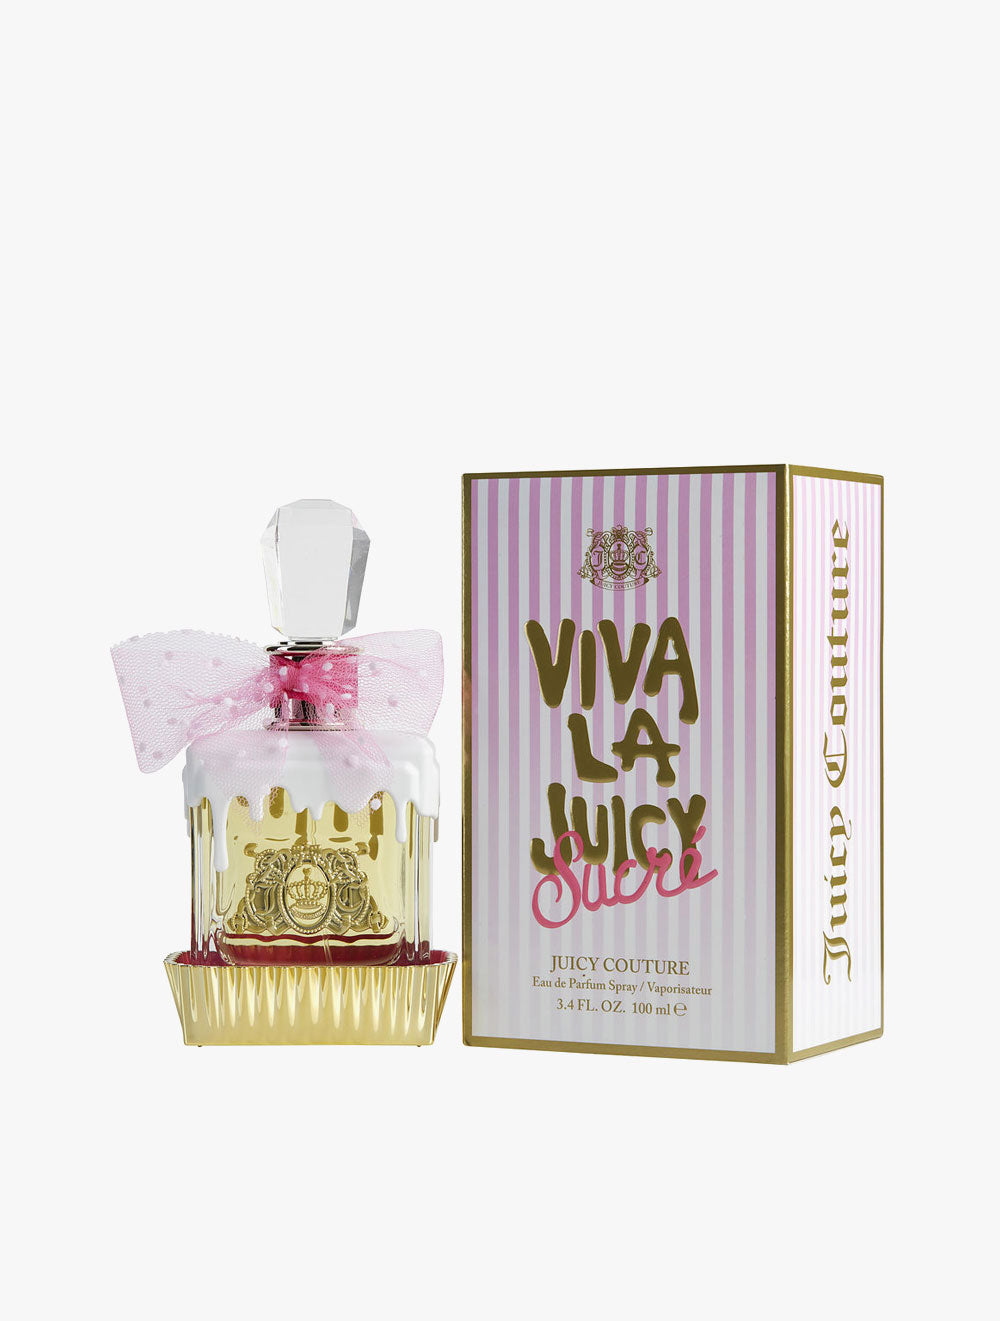 JUICY COUTURE Viva La Juicy Sucre Eau de Parfum 100 ML